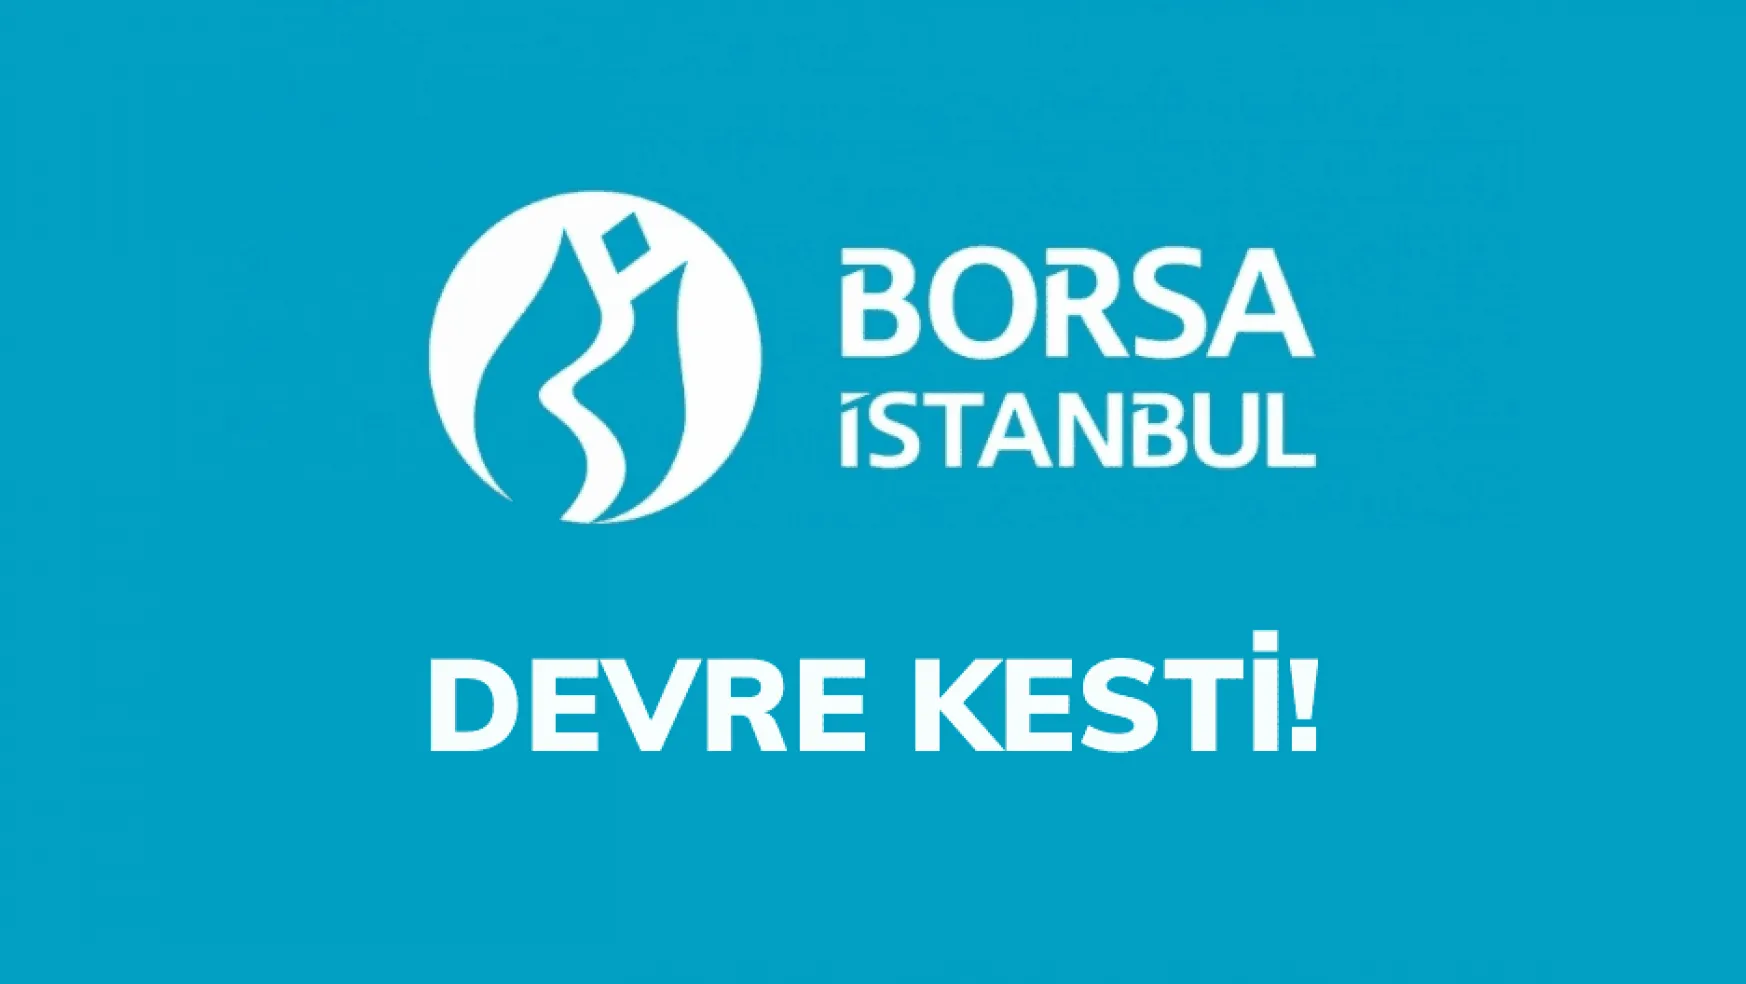 Borsa İstanbul, devre keserek açtı!